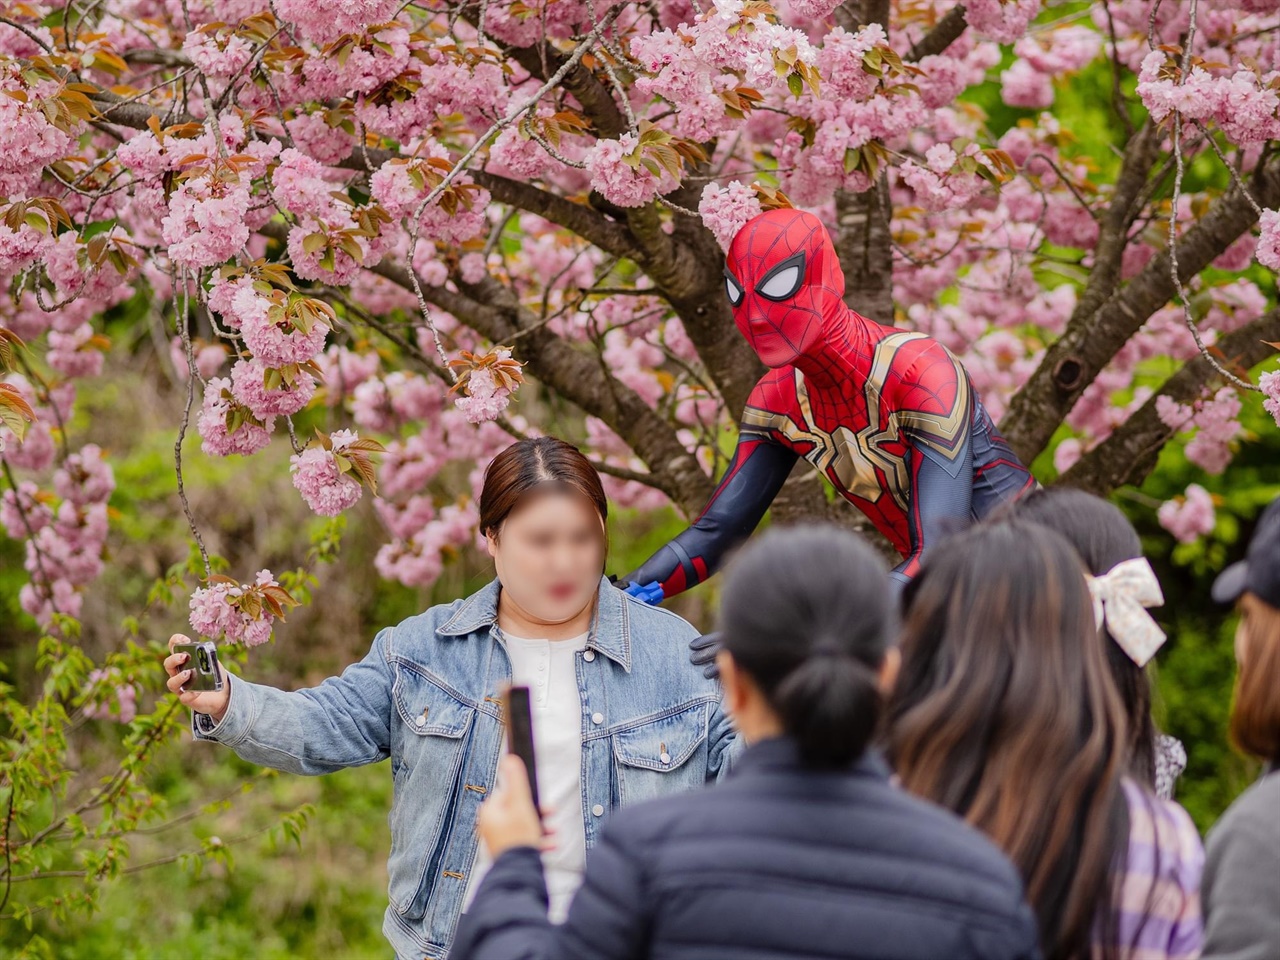 강력한 거미줄을 사용해 악당을 물리치며 통쾌함을 선사했던 영화속의 ‘스파이더맨’이 서산 문수사 꽃밭에 등장해서 화제다.